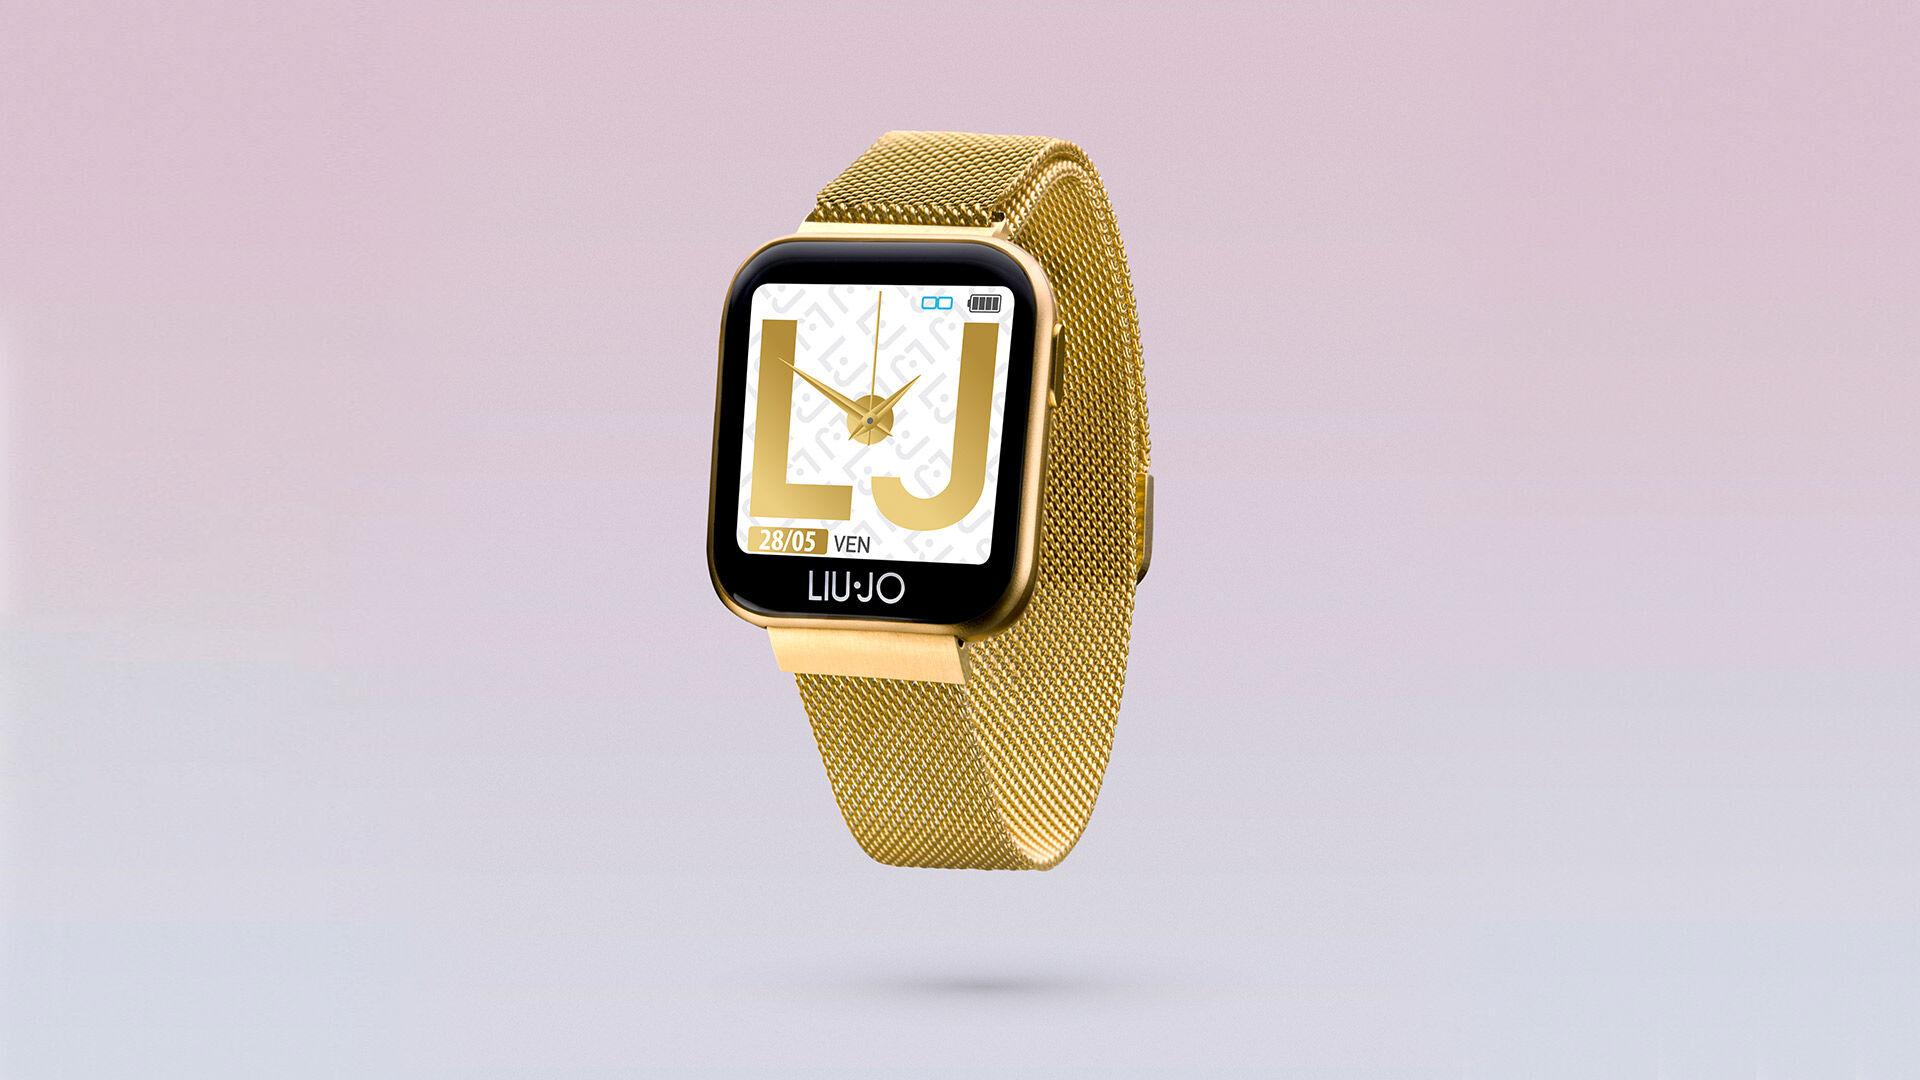 Smartwatch Liu Jo nuova collezione 2020